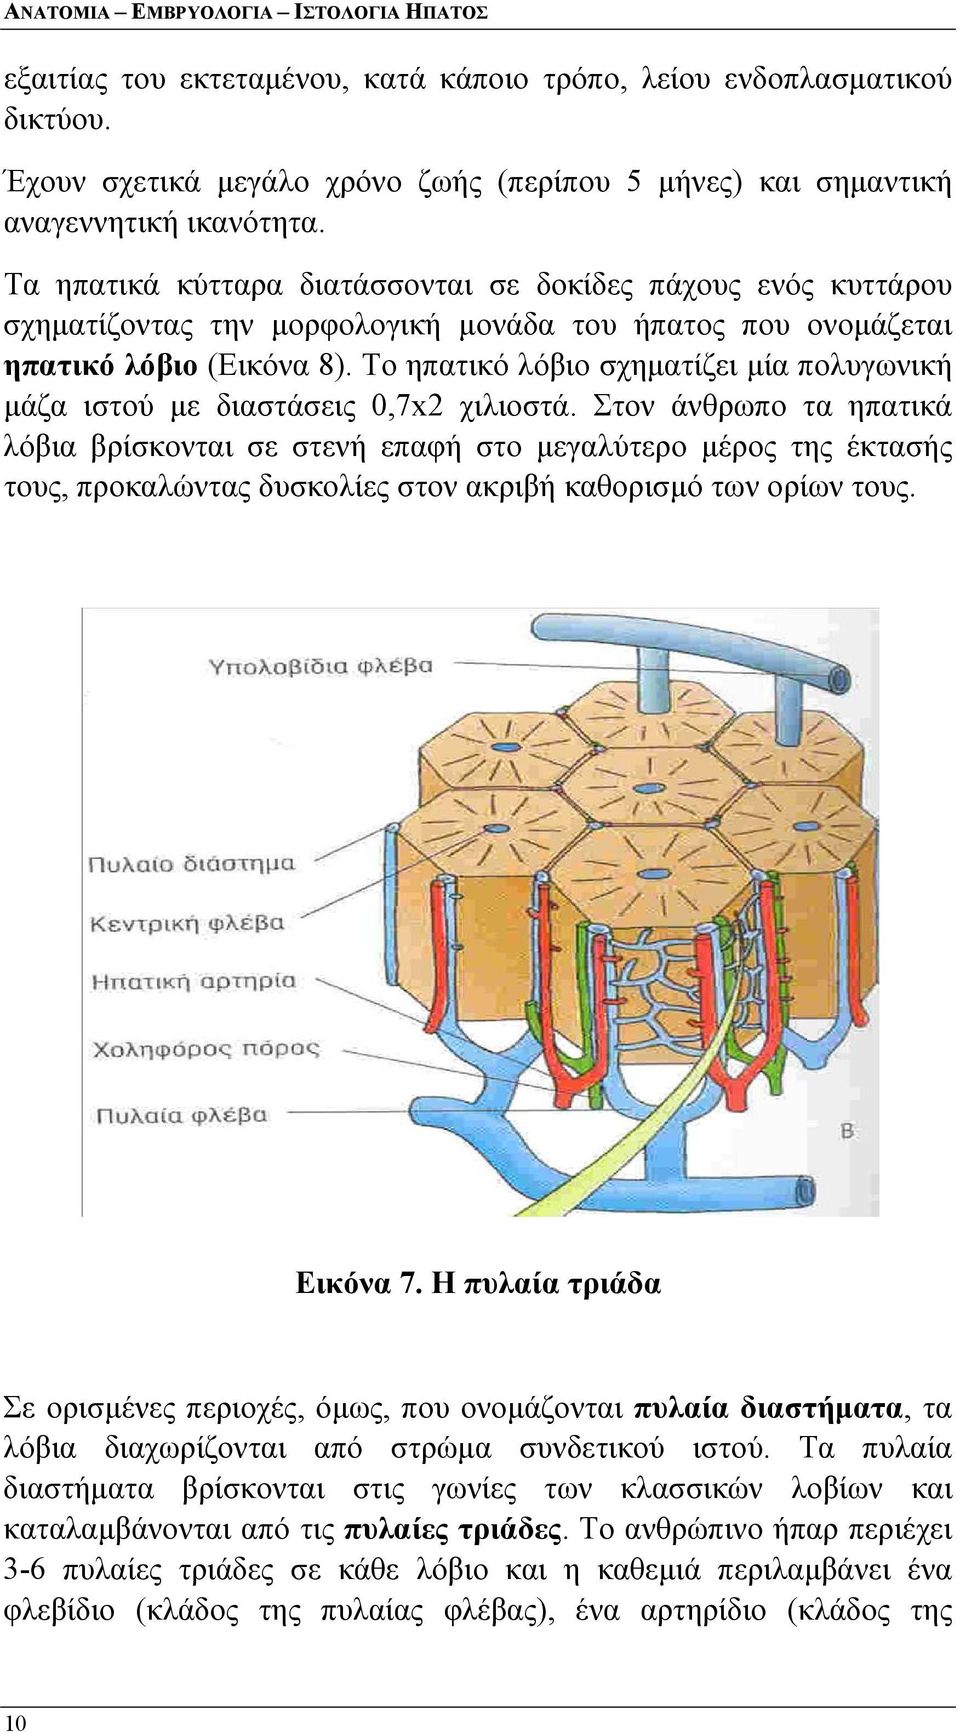 Τα ηπατικά κύτταρα διατάσσονται σε δοκίδες πάχους ενός κυττάρου σχηματίζοντας την μορφολογική μονάδα του ήπατος που ονομάζεται ηπατικό λόβιο (Εικόνα 8).